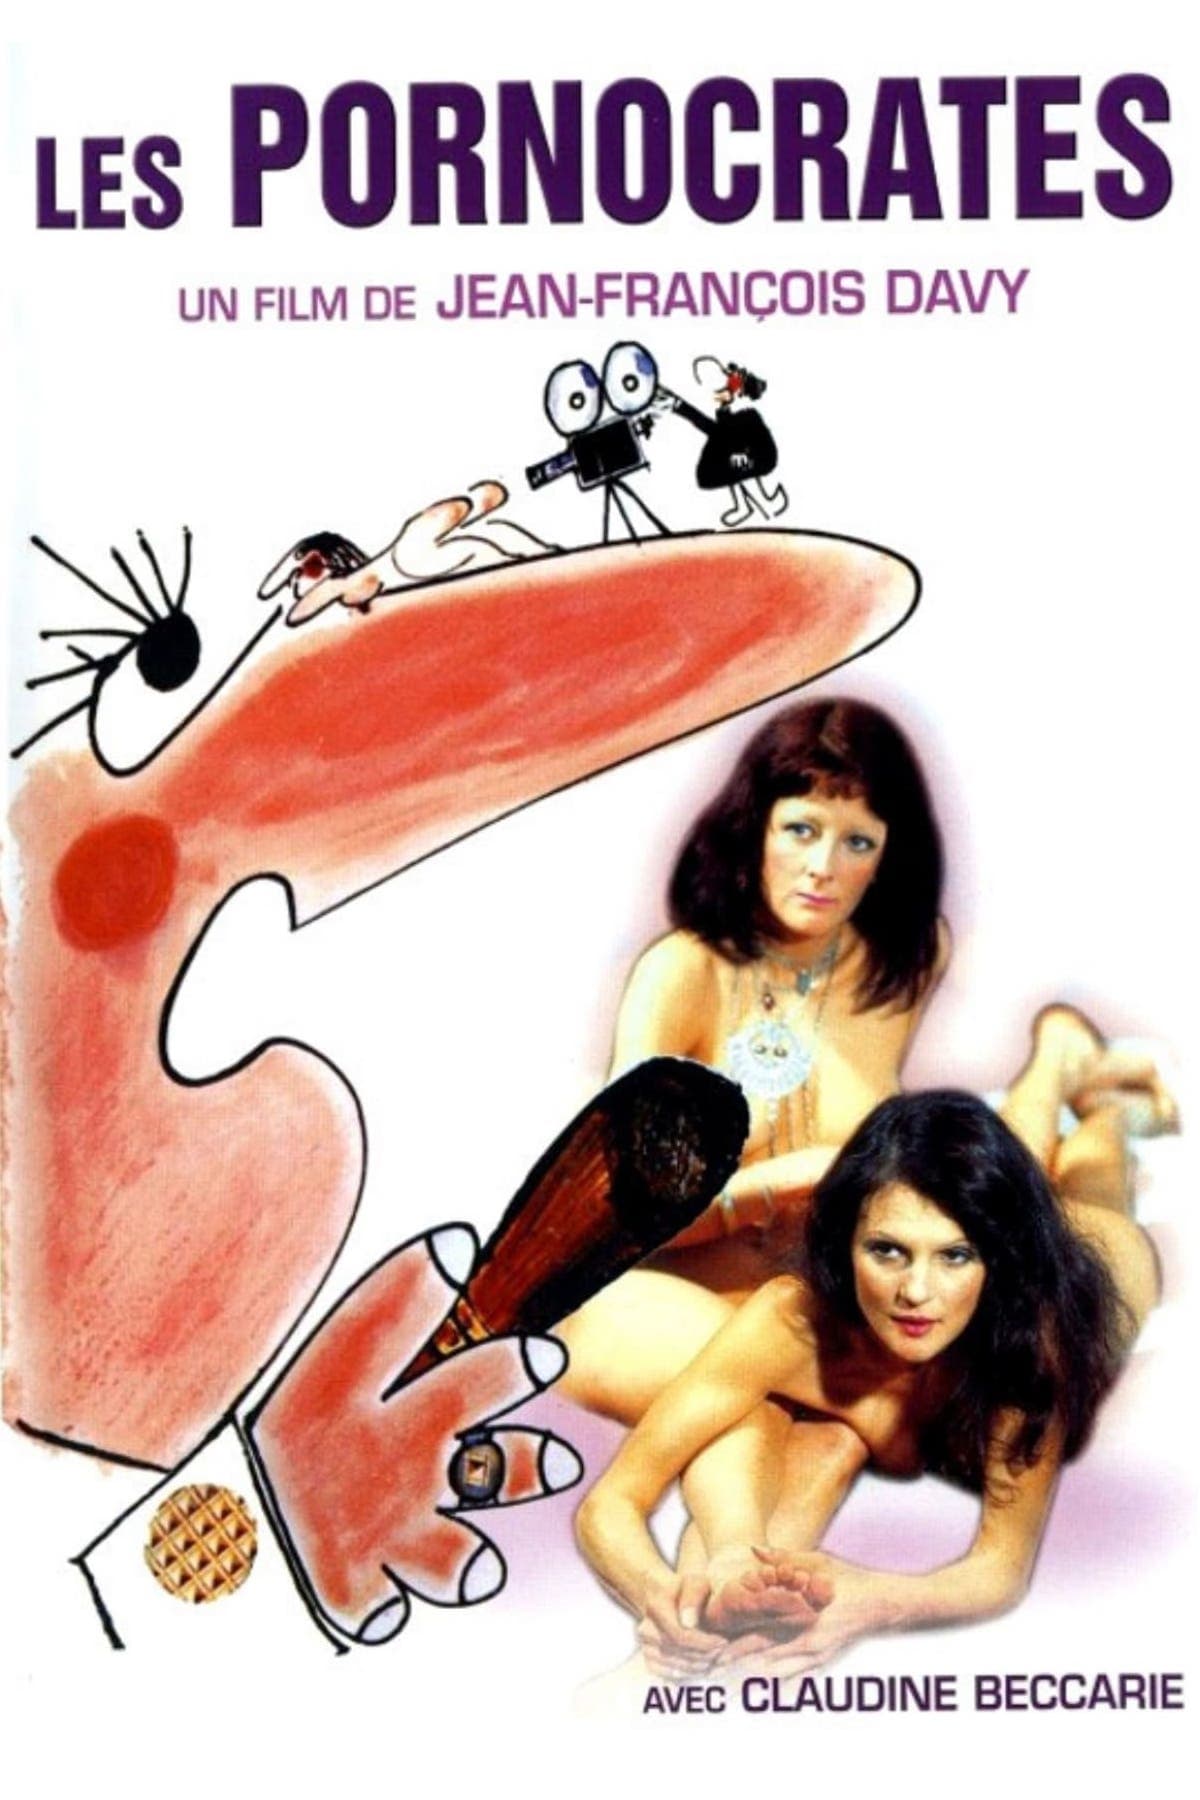 Les Pornocrates (1976)